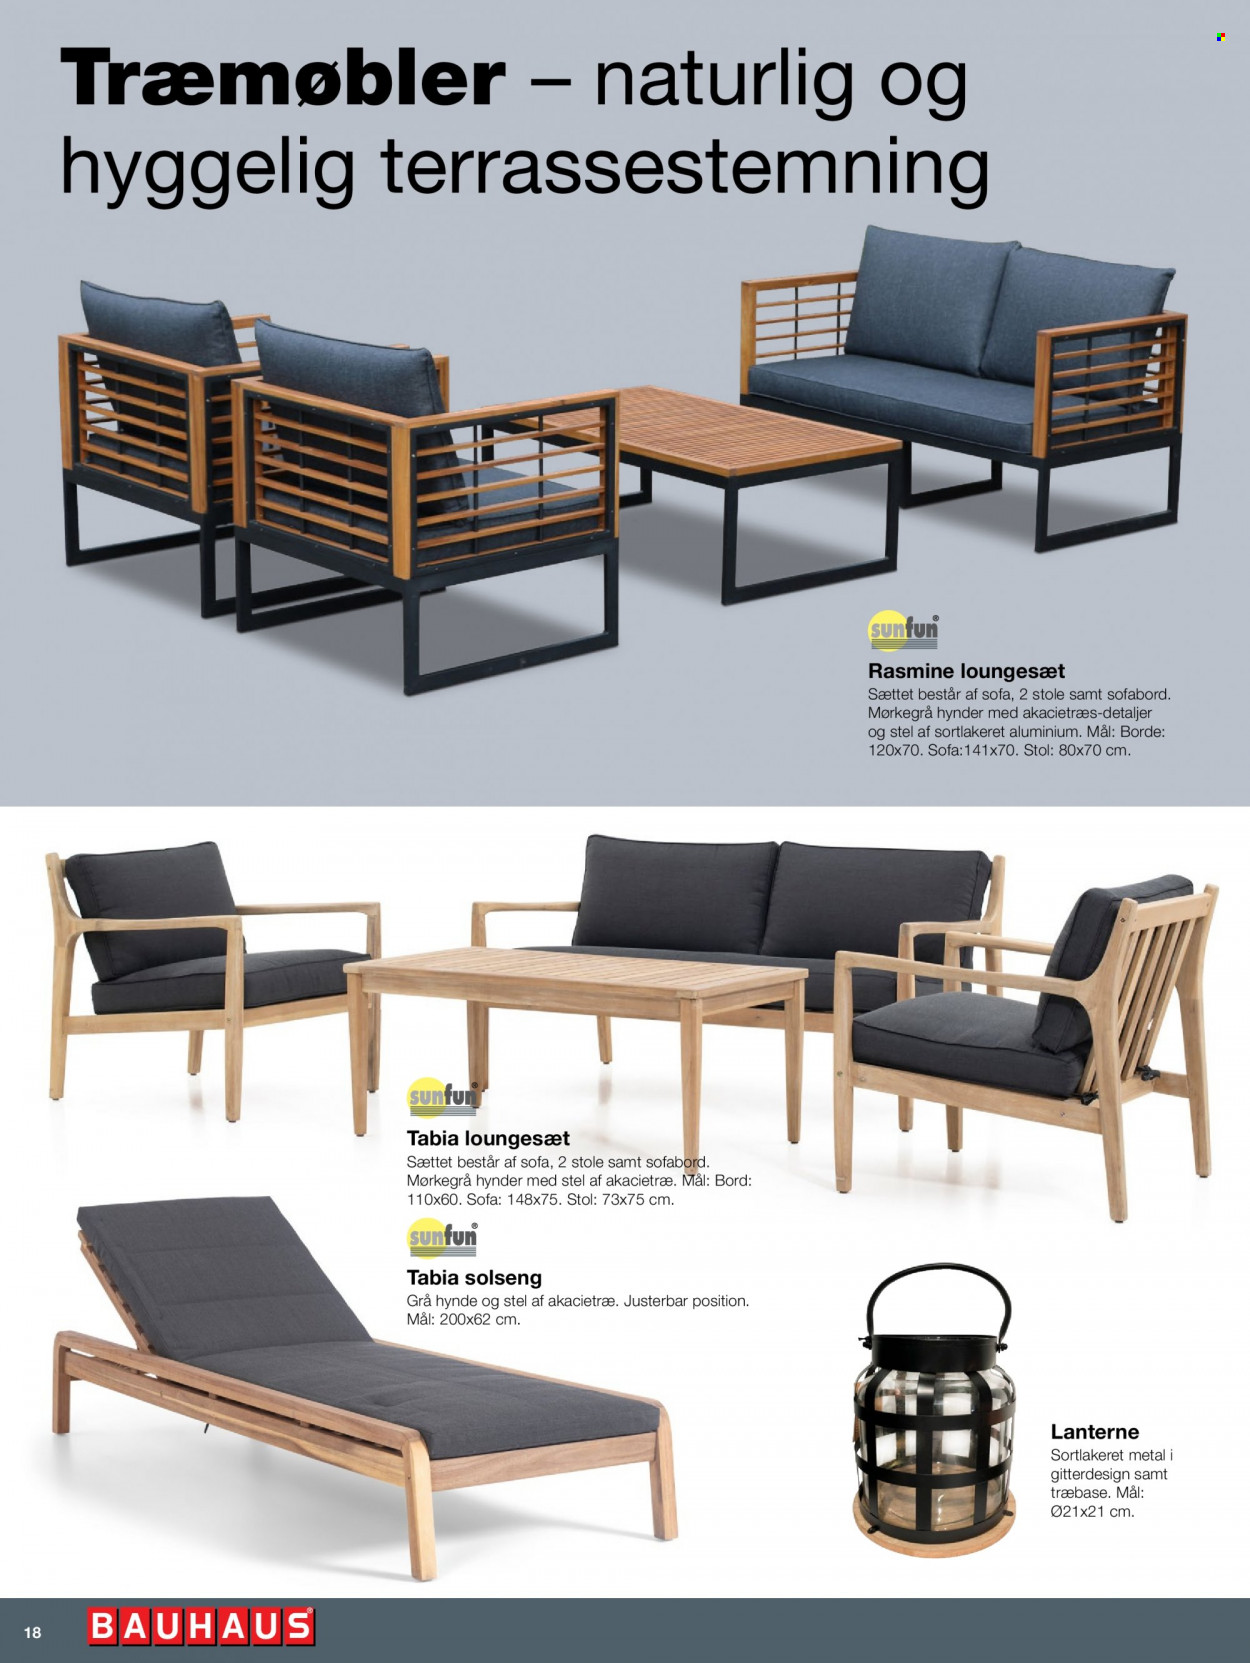 Bauhaus tilbud  - tilbudsprodukter - loungesæt, bord, sofabord, sofa, stol. Side 18.